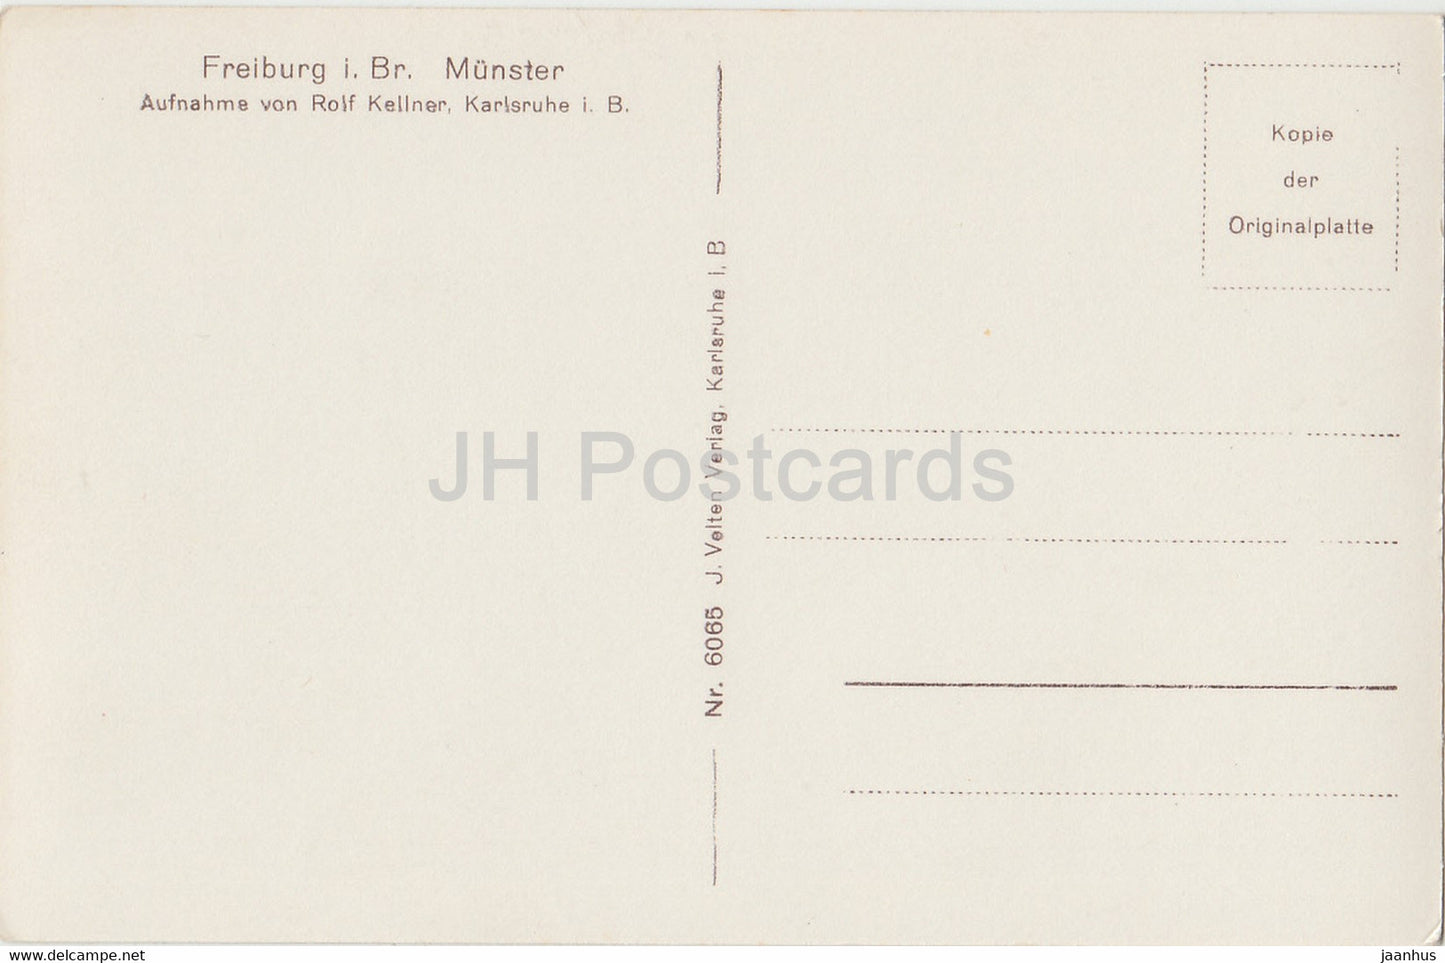 Fribourg i B - Munster - cathédrale - carte postale ancienne - Allemagne - inutilisée